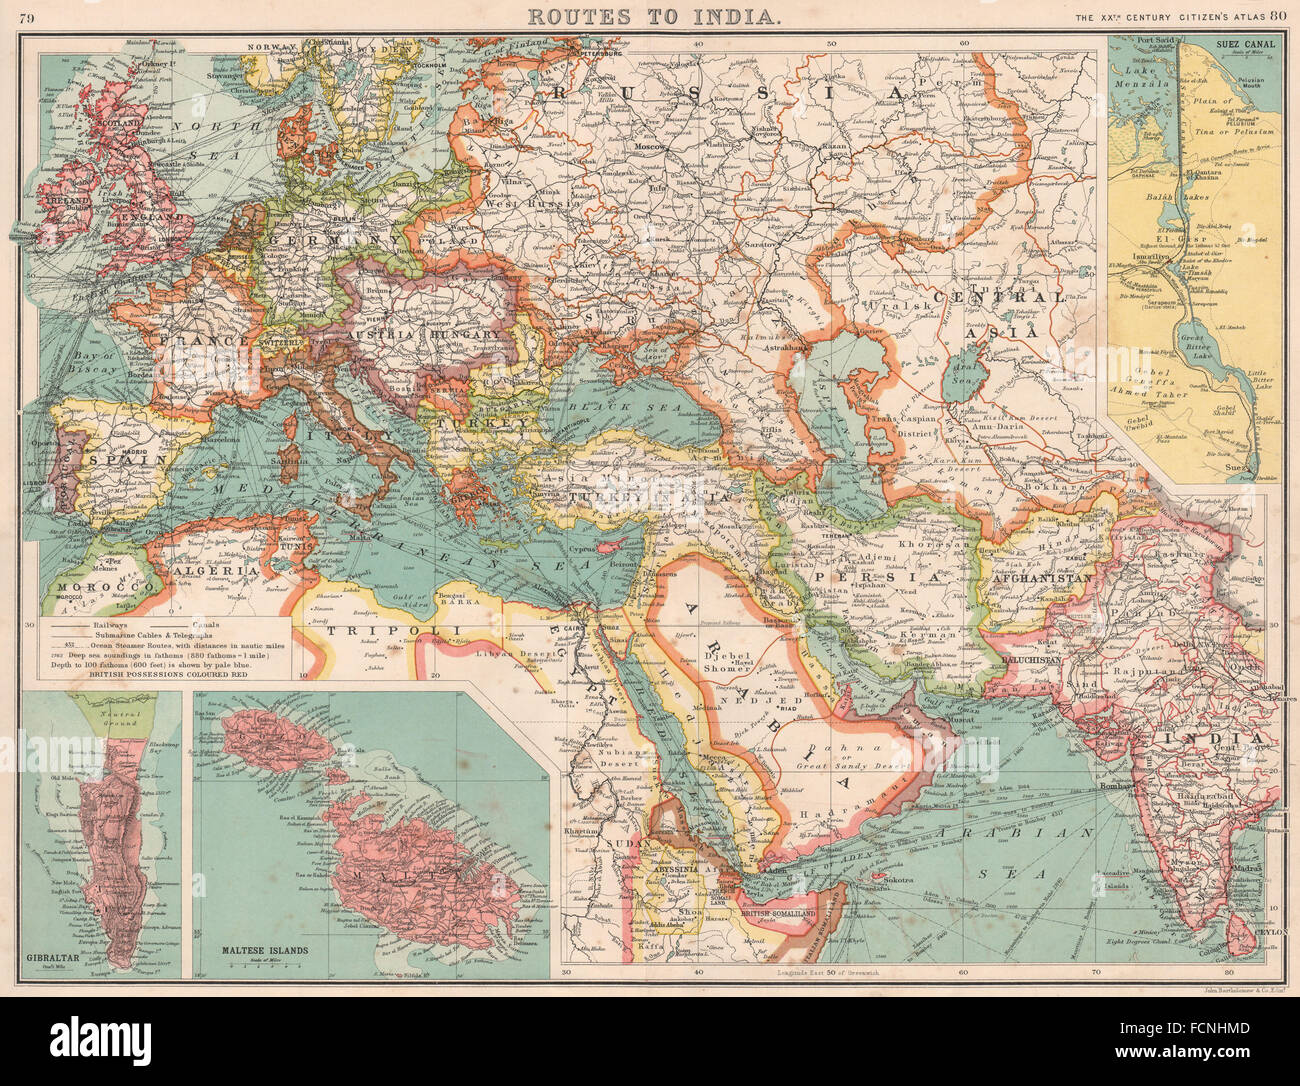 Les routes vers l'Inde:Europe Moyen-Orient et Asie.Canal de Suez et Gibraltar, Malte 1901 map Banque D'Images